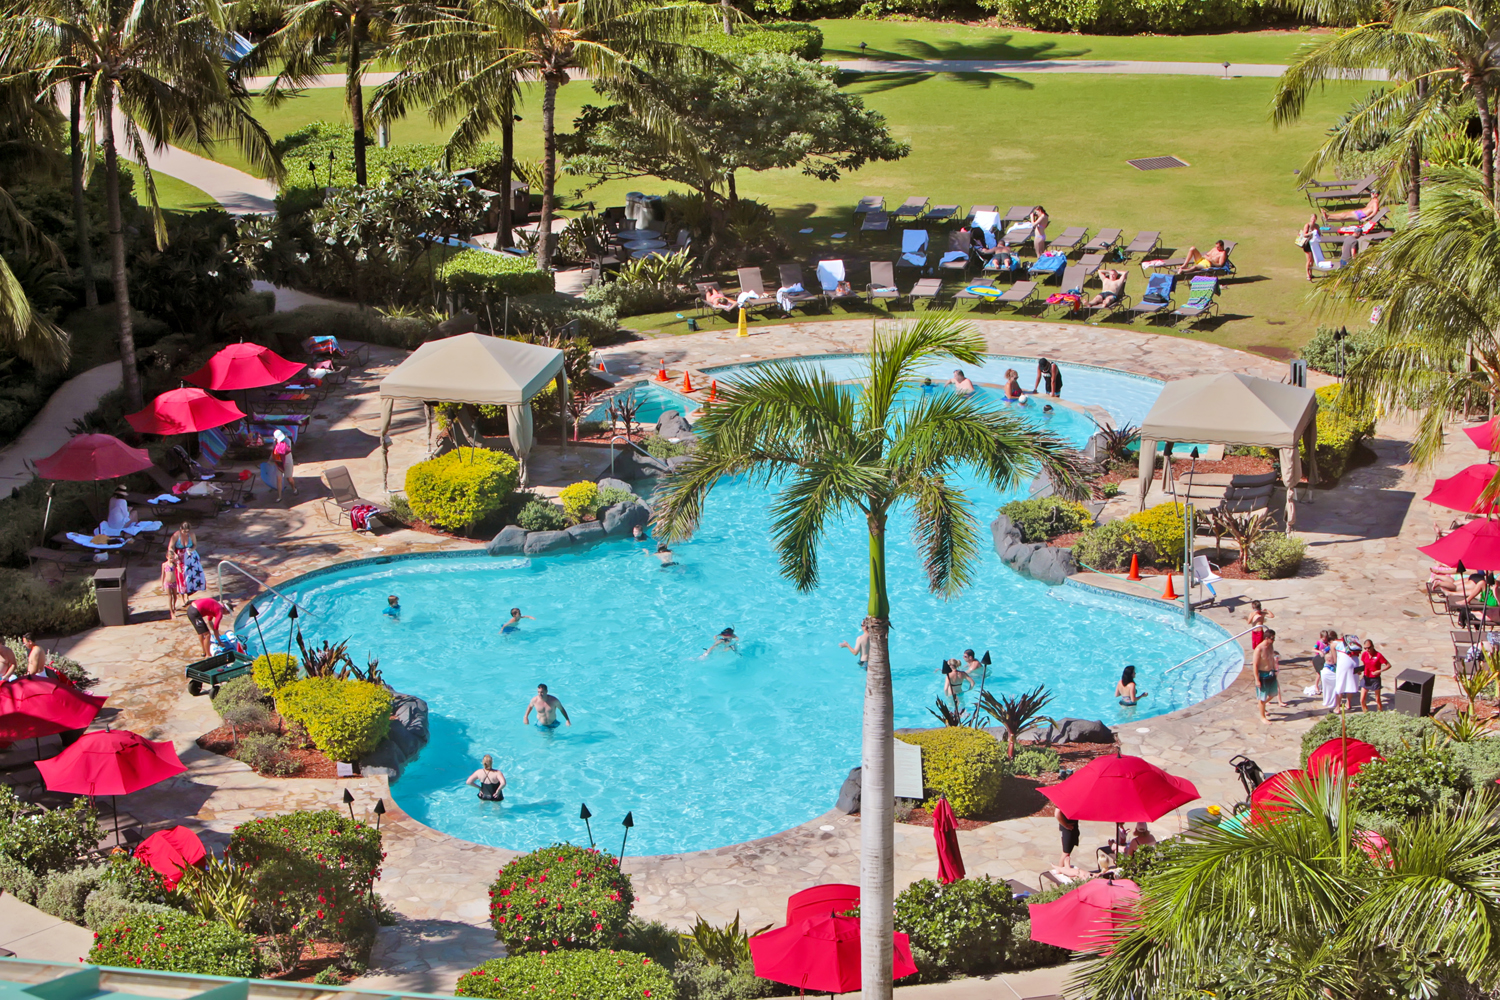 The pool at Honua Kai Resort & Spa in Maui.